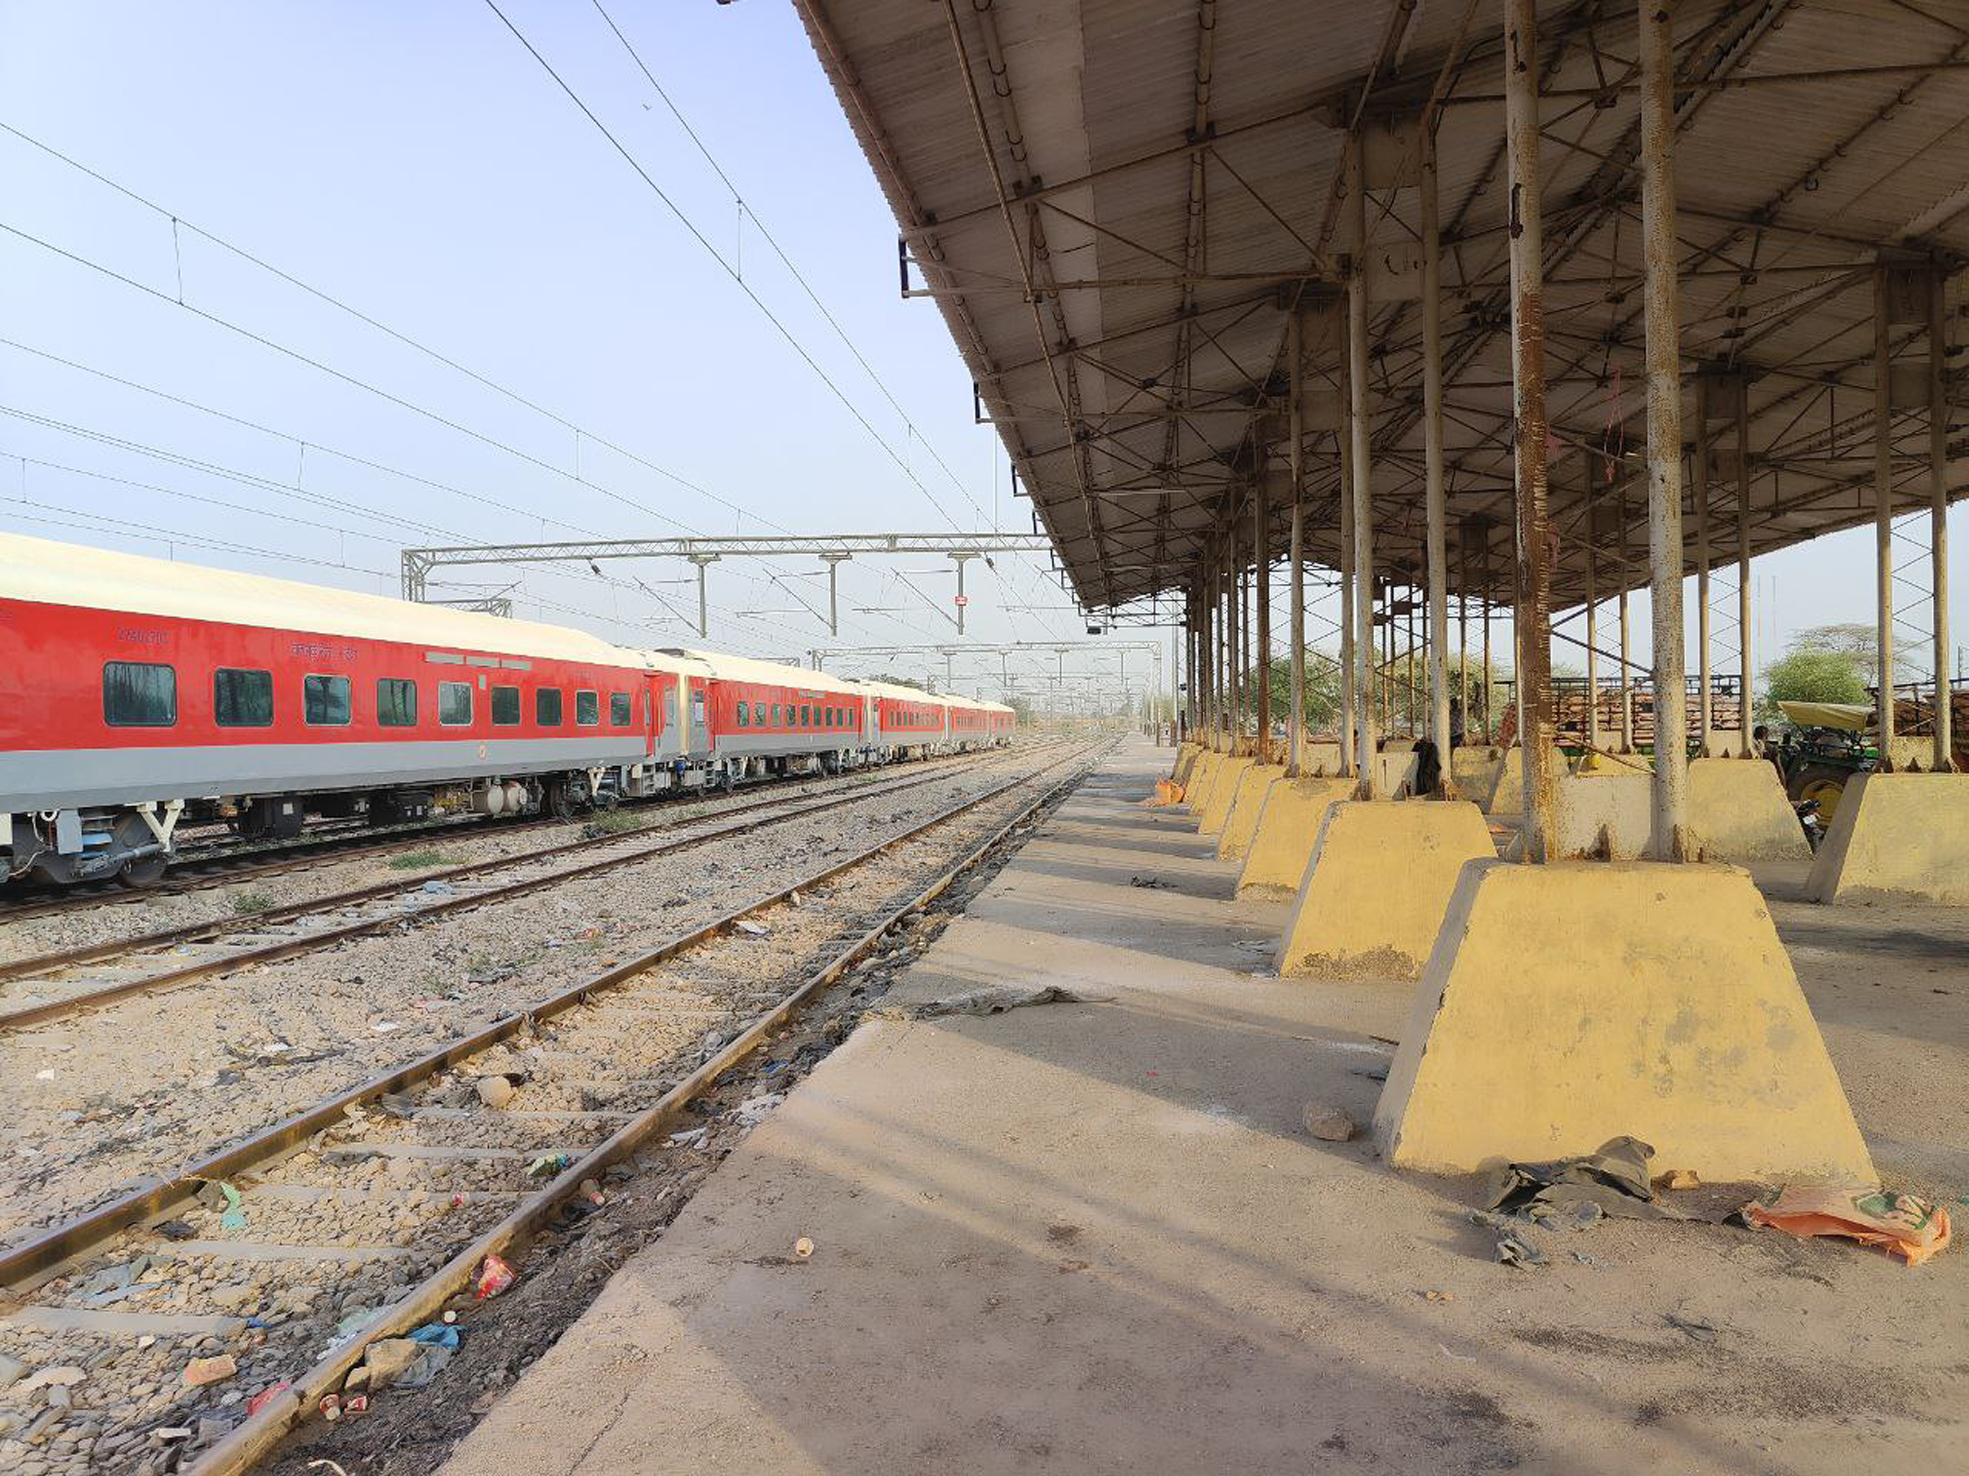 सूरतगढ़ रेलवे स्टेशन पर माल की लोडिंग व अनलोडिंग होगी अब आसान, प्रोजेक्ट पर
रेलवे खर्च करेगा नौ करोड़ रुपए